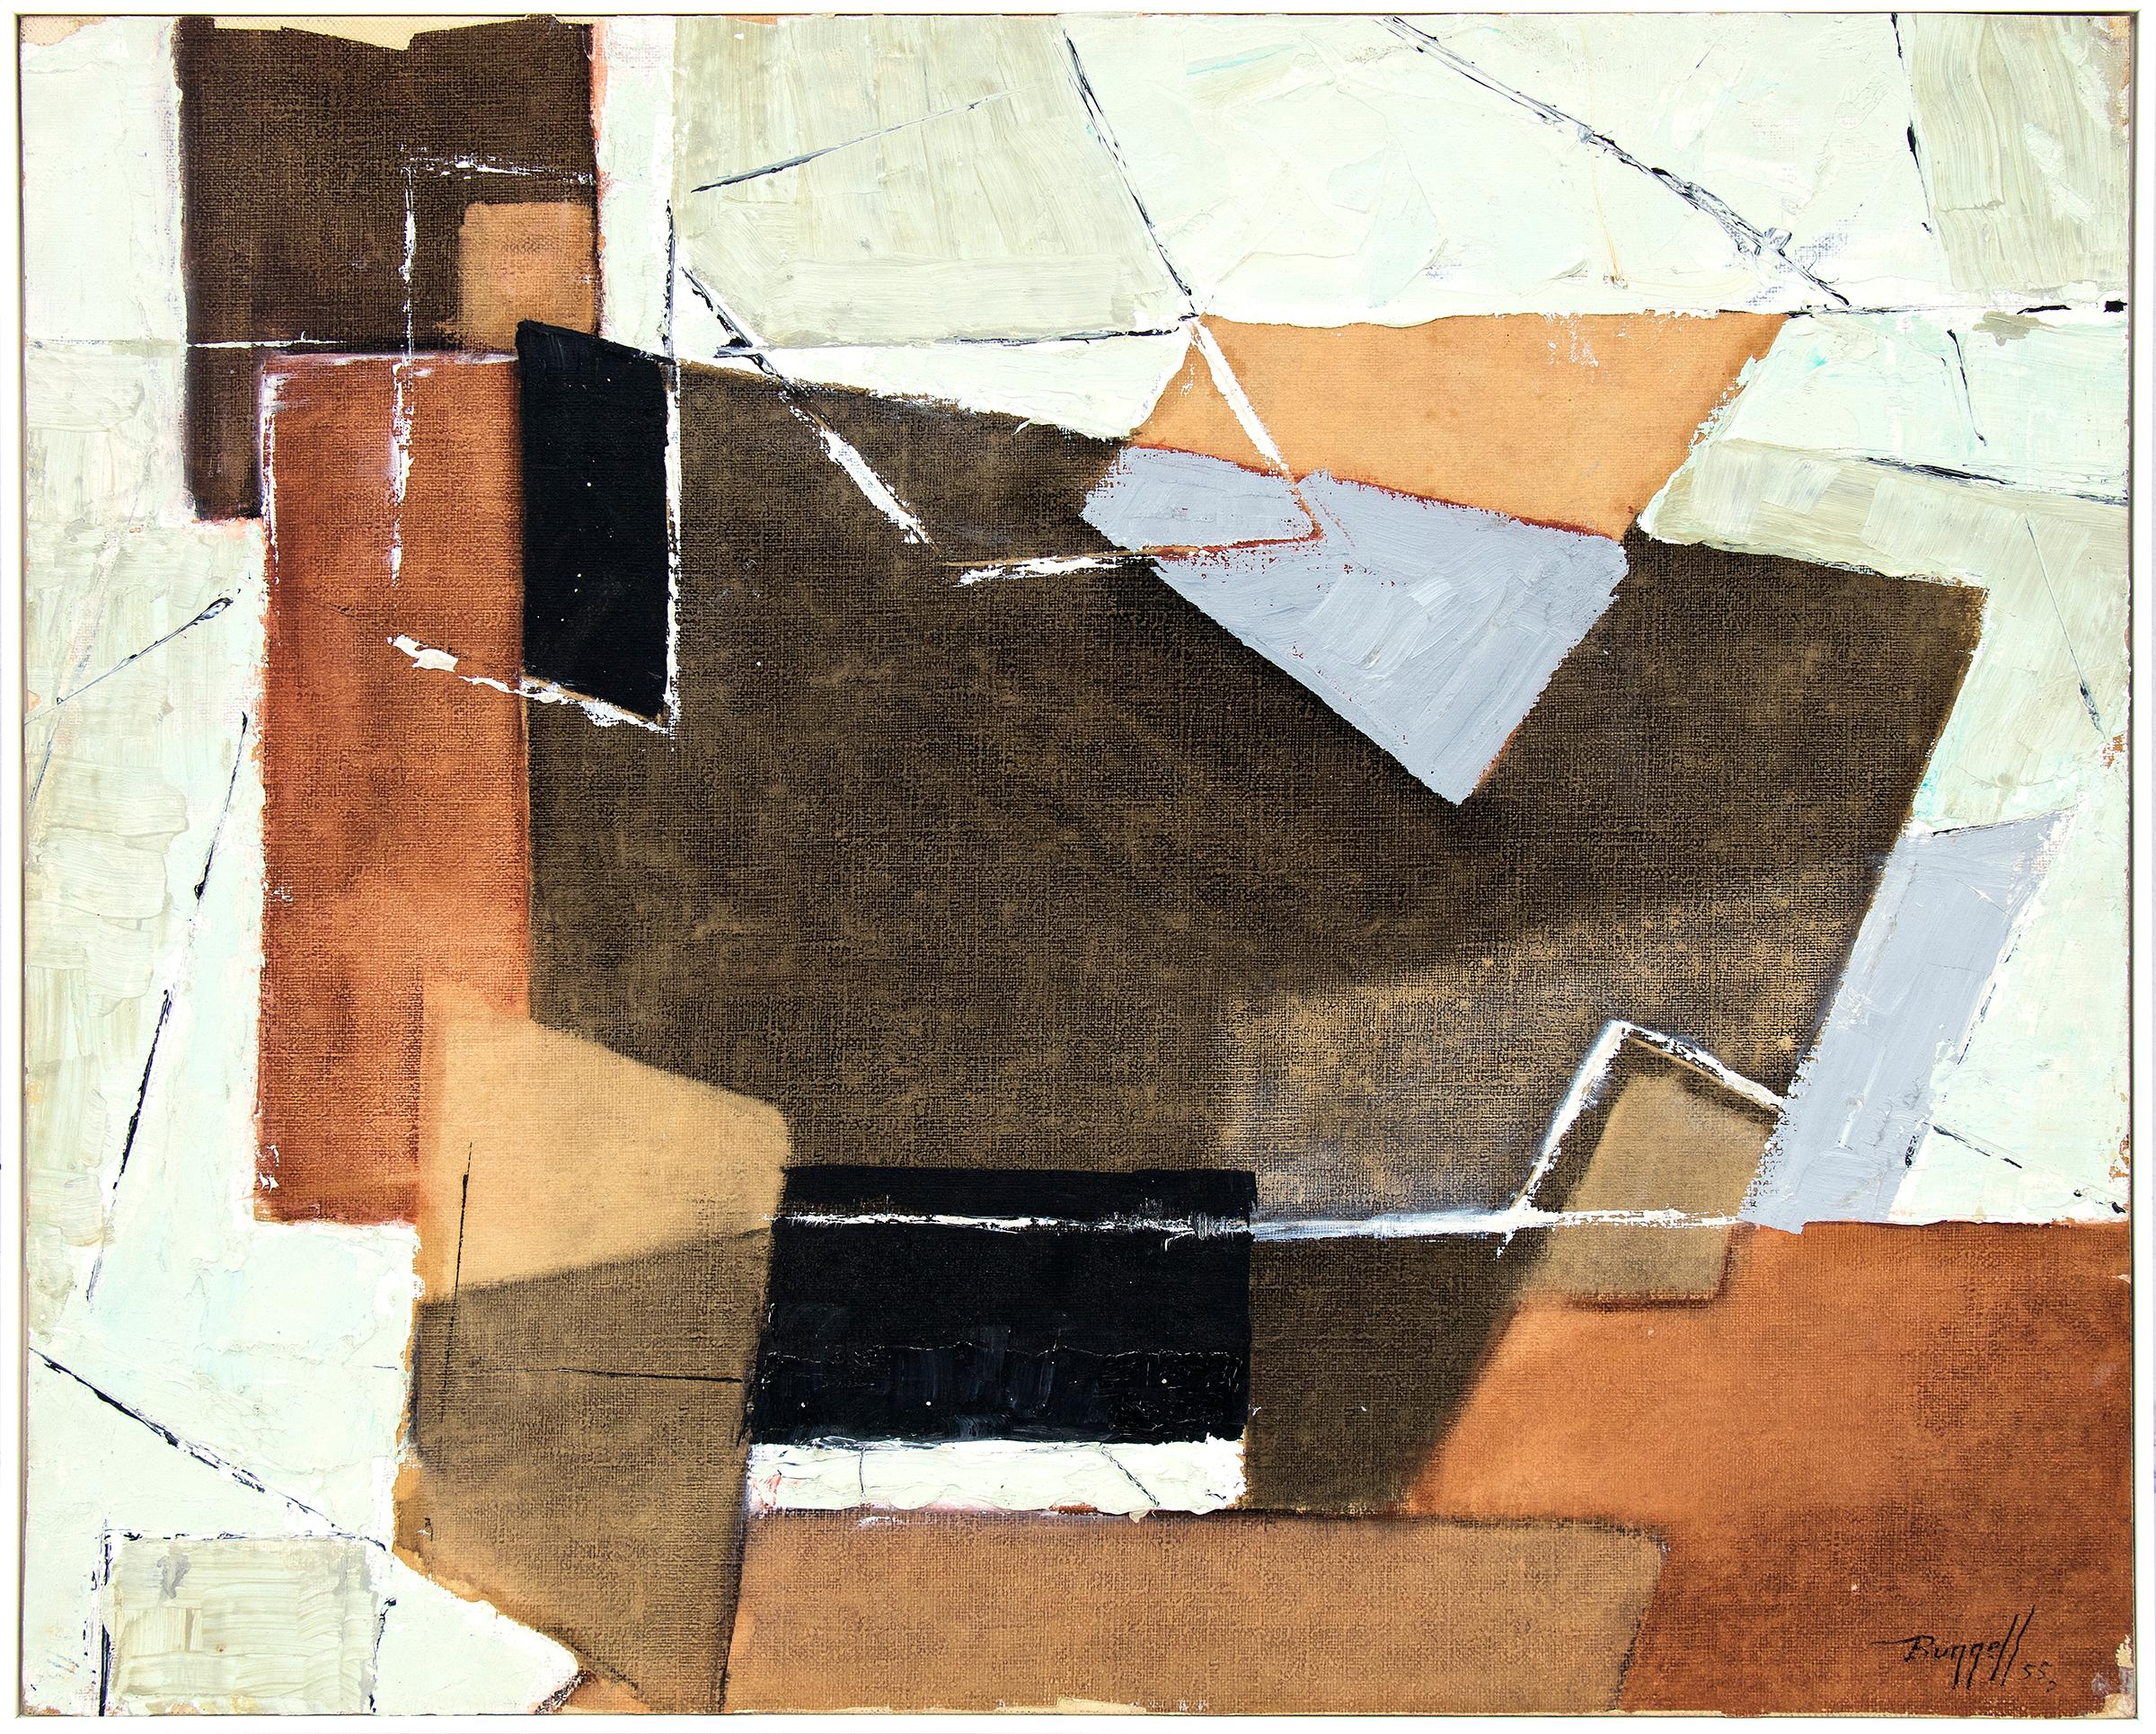 Abstrakt-expressionistisches Ölgemälde aus den 1950er Jahren, Blau, Braun, Orange, Salbeigrün – Painting von Charles Ragland Bunnell